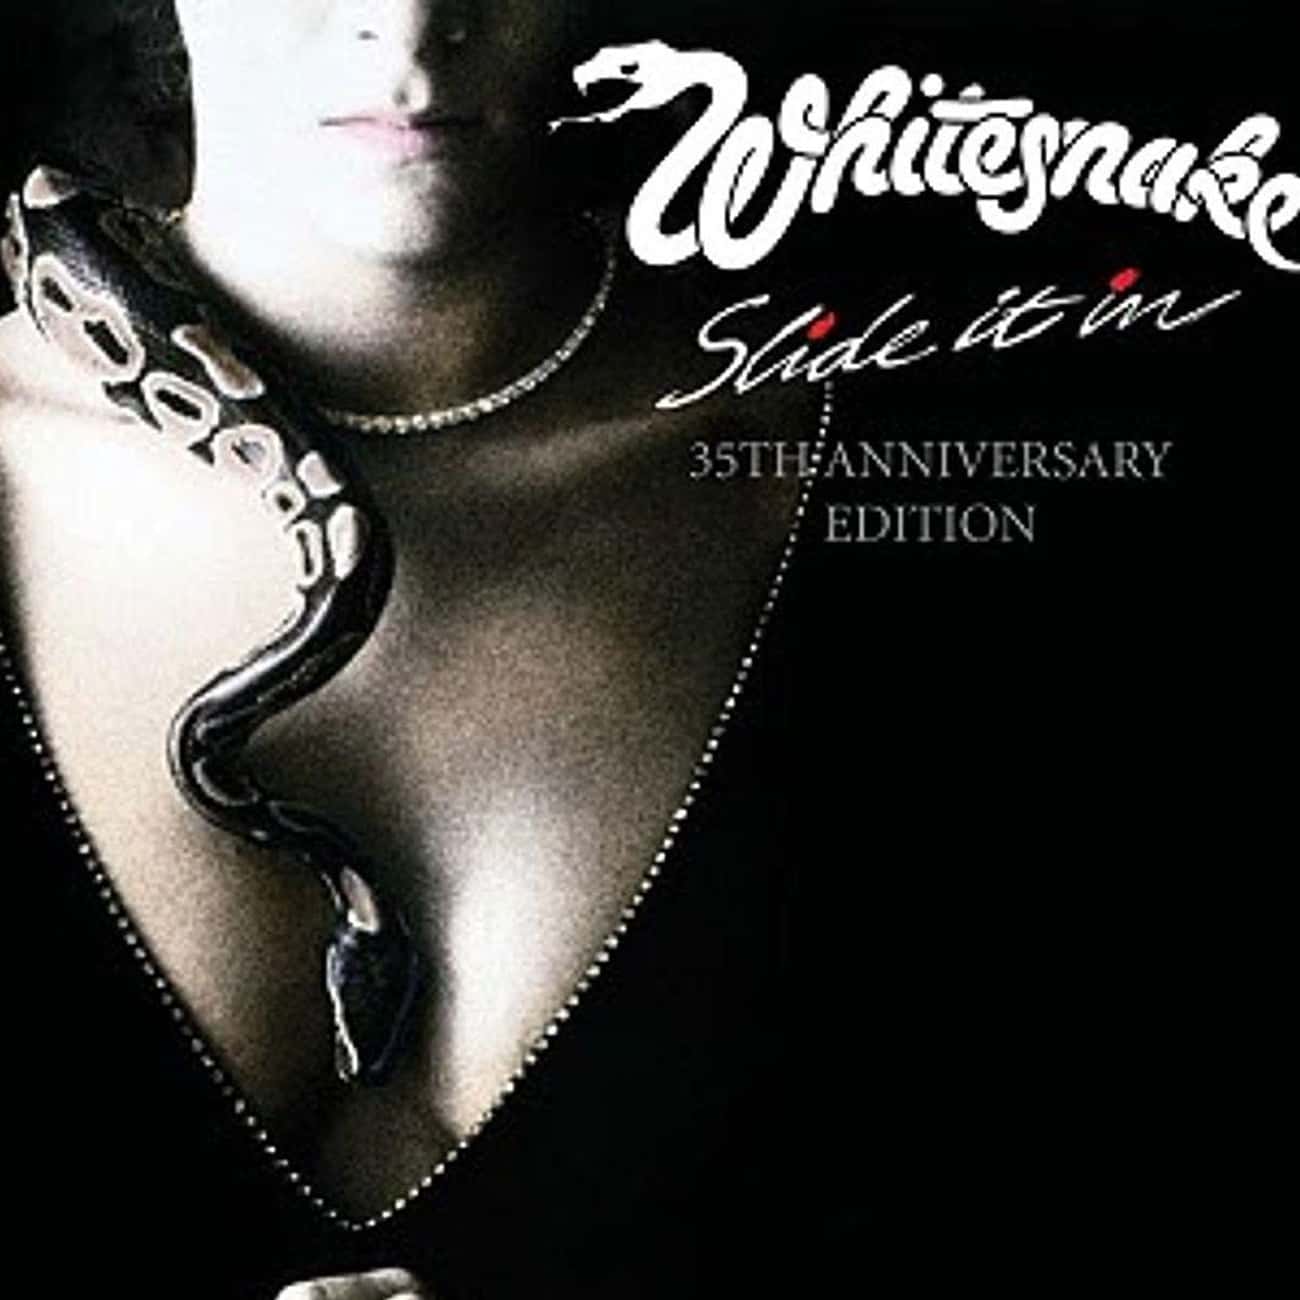 whitesnake slide it in tour dates